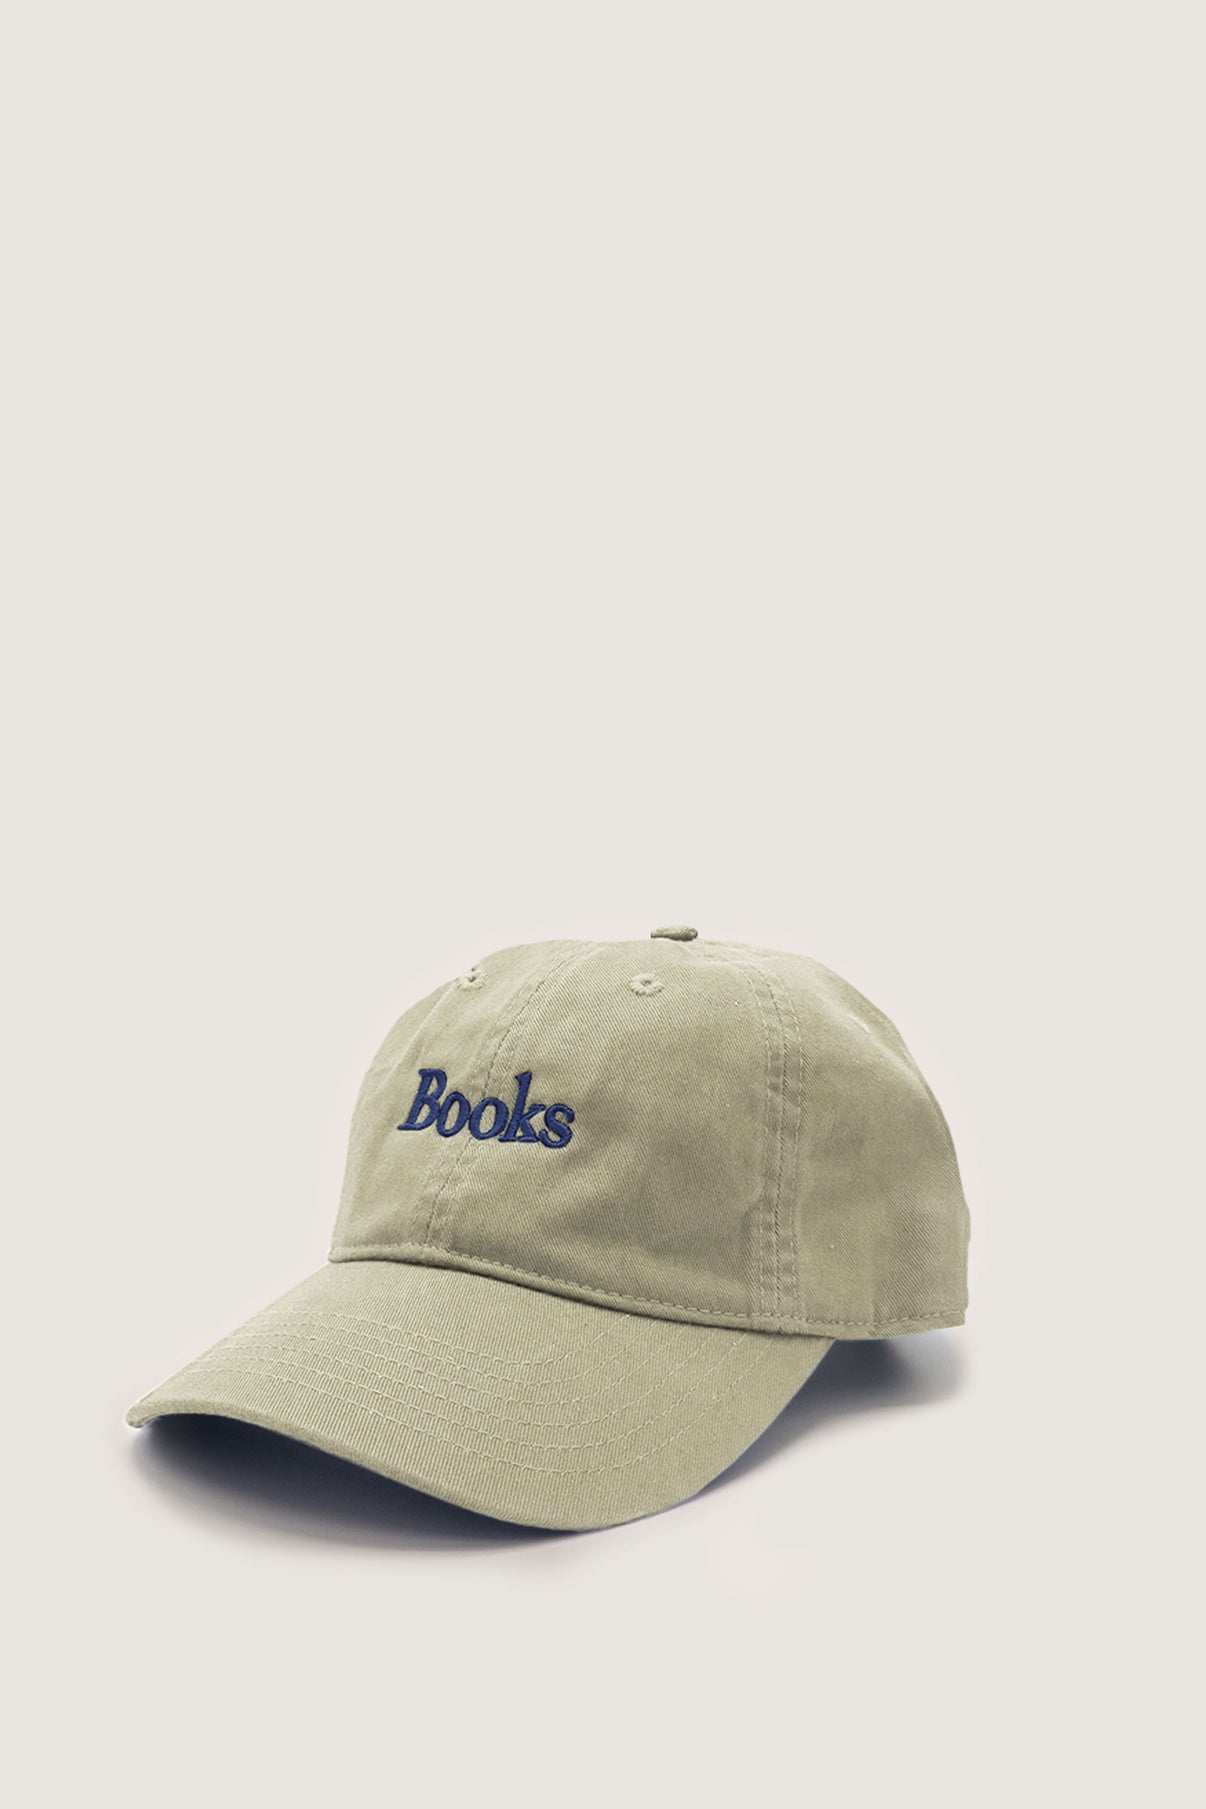 BOOKS CAP vue 2